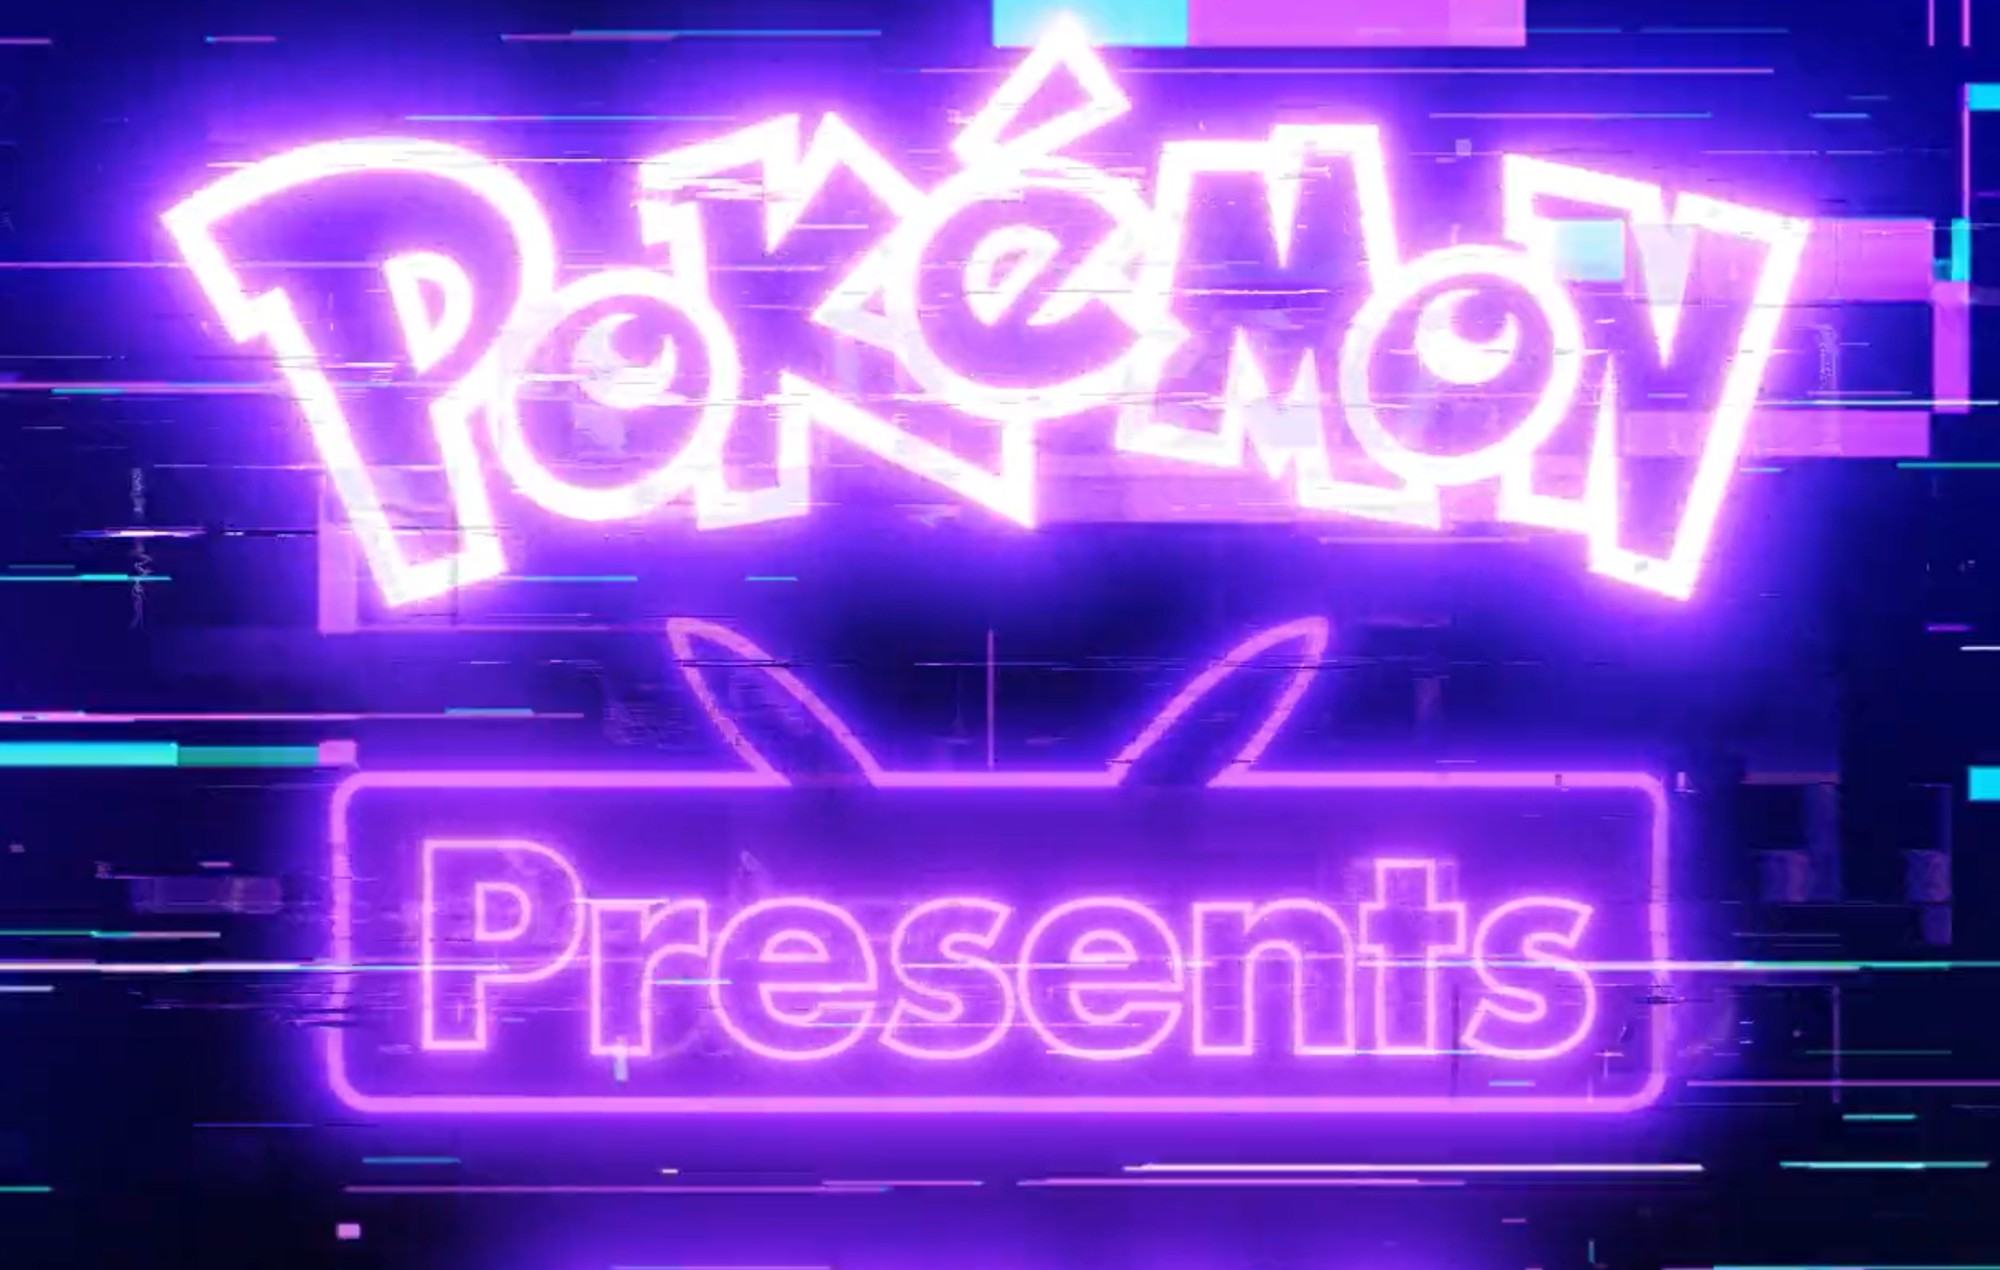 Presentaciones de "Pokémon" anunciadas para la próxima semana con un glitchy teaser